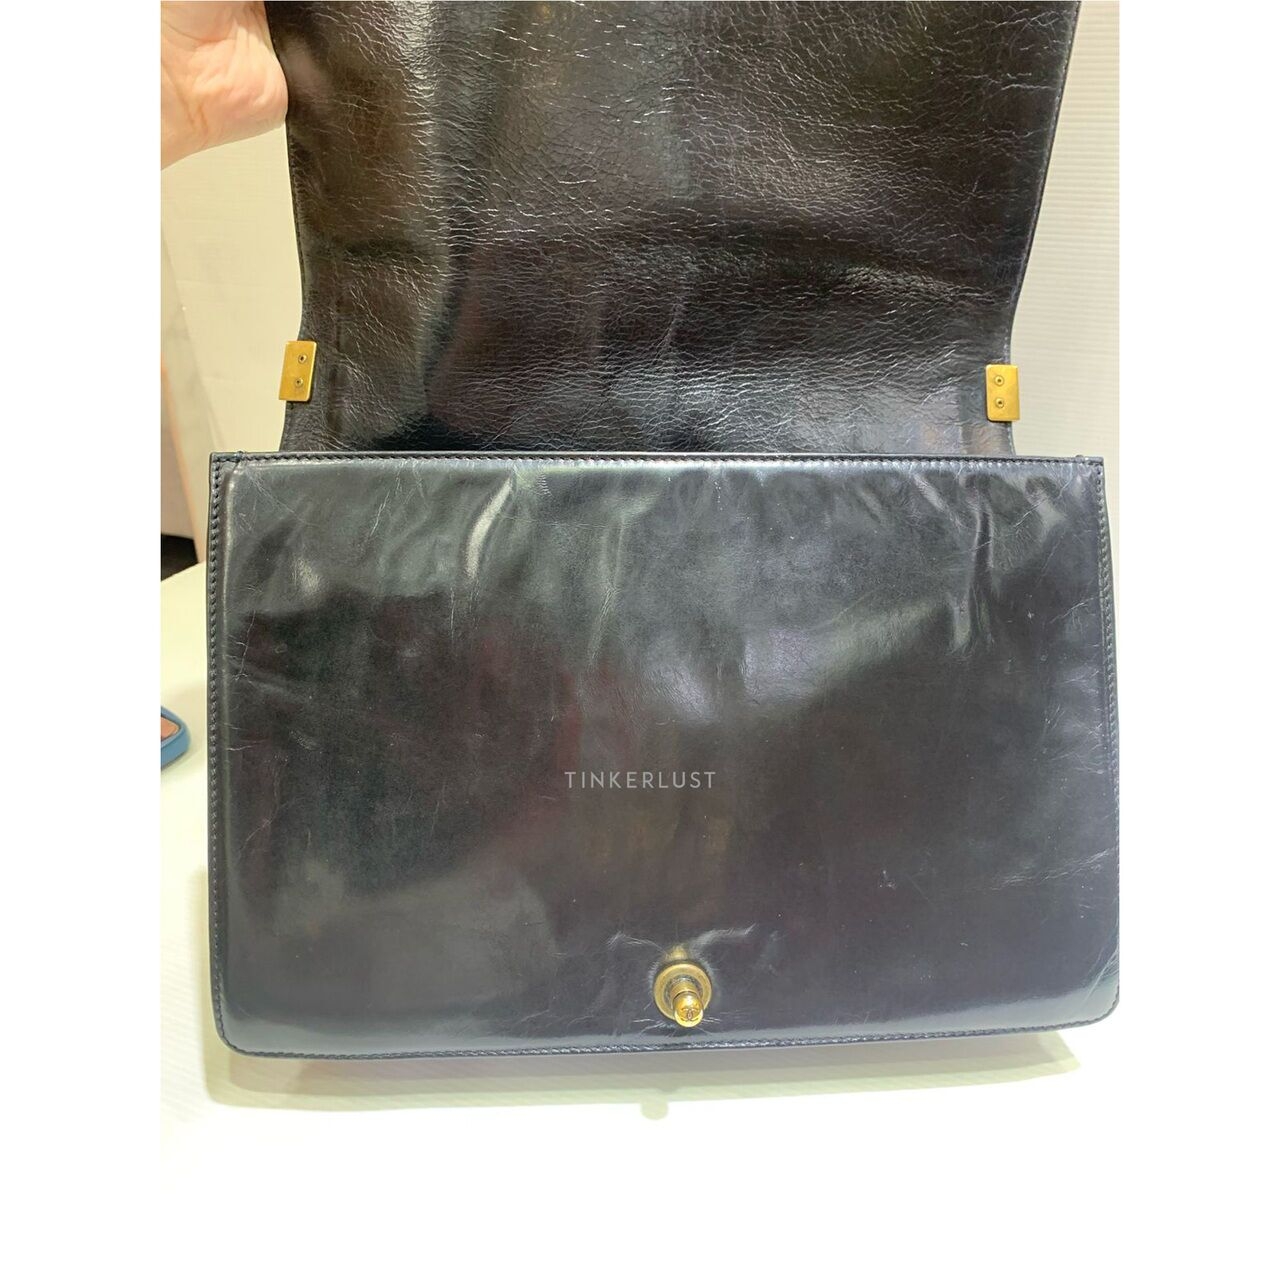 Chanel Boy Maxi Calfskin Leather Black GHW #17 Shoulder Bag 